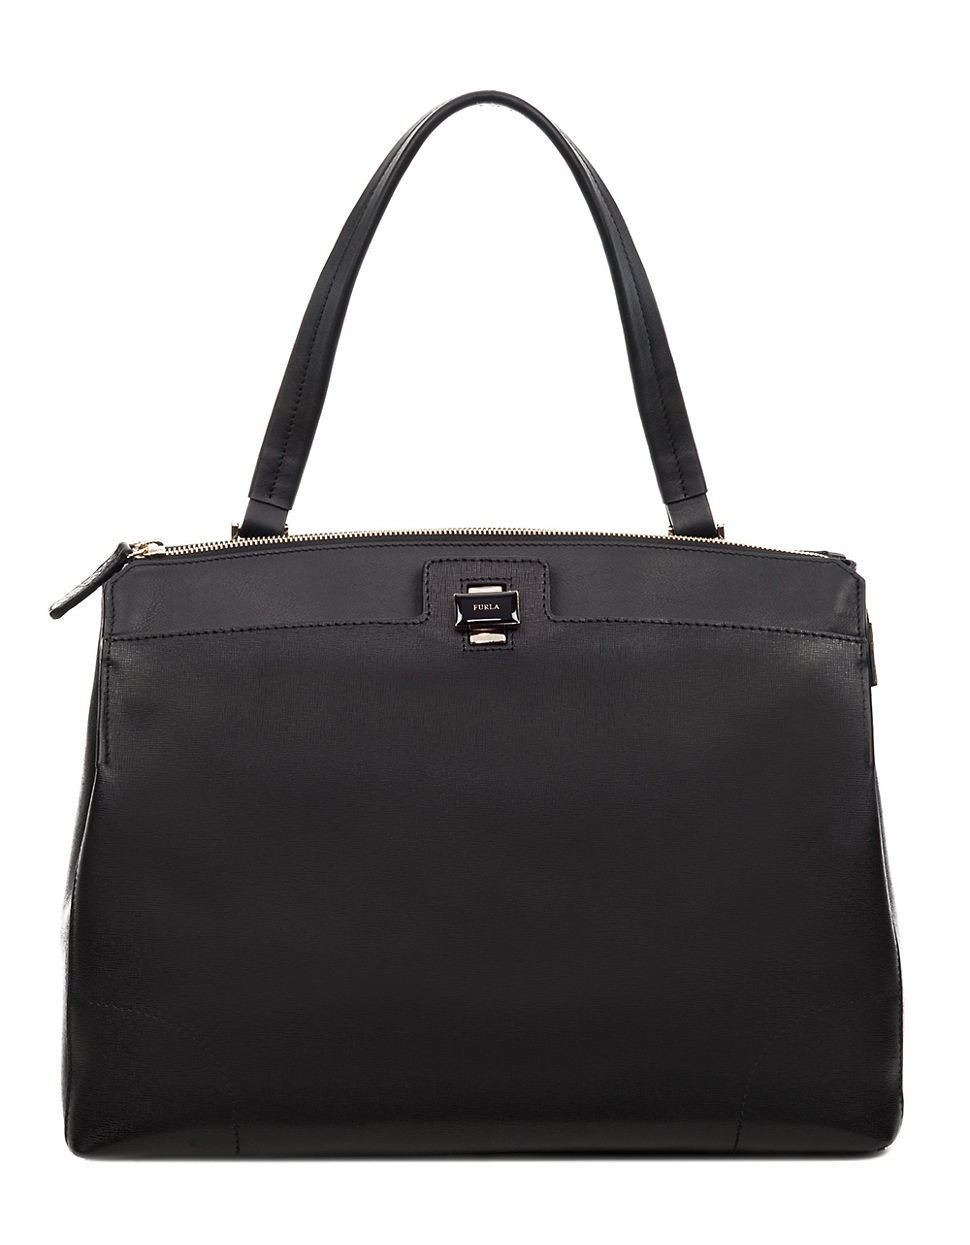 Furla Piper Lux Leather Shoulder Bag in Black | Lyst